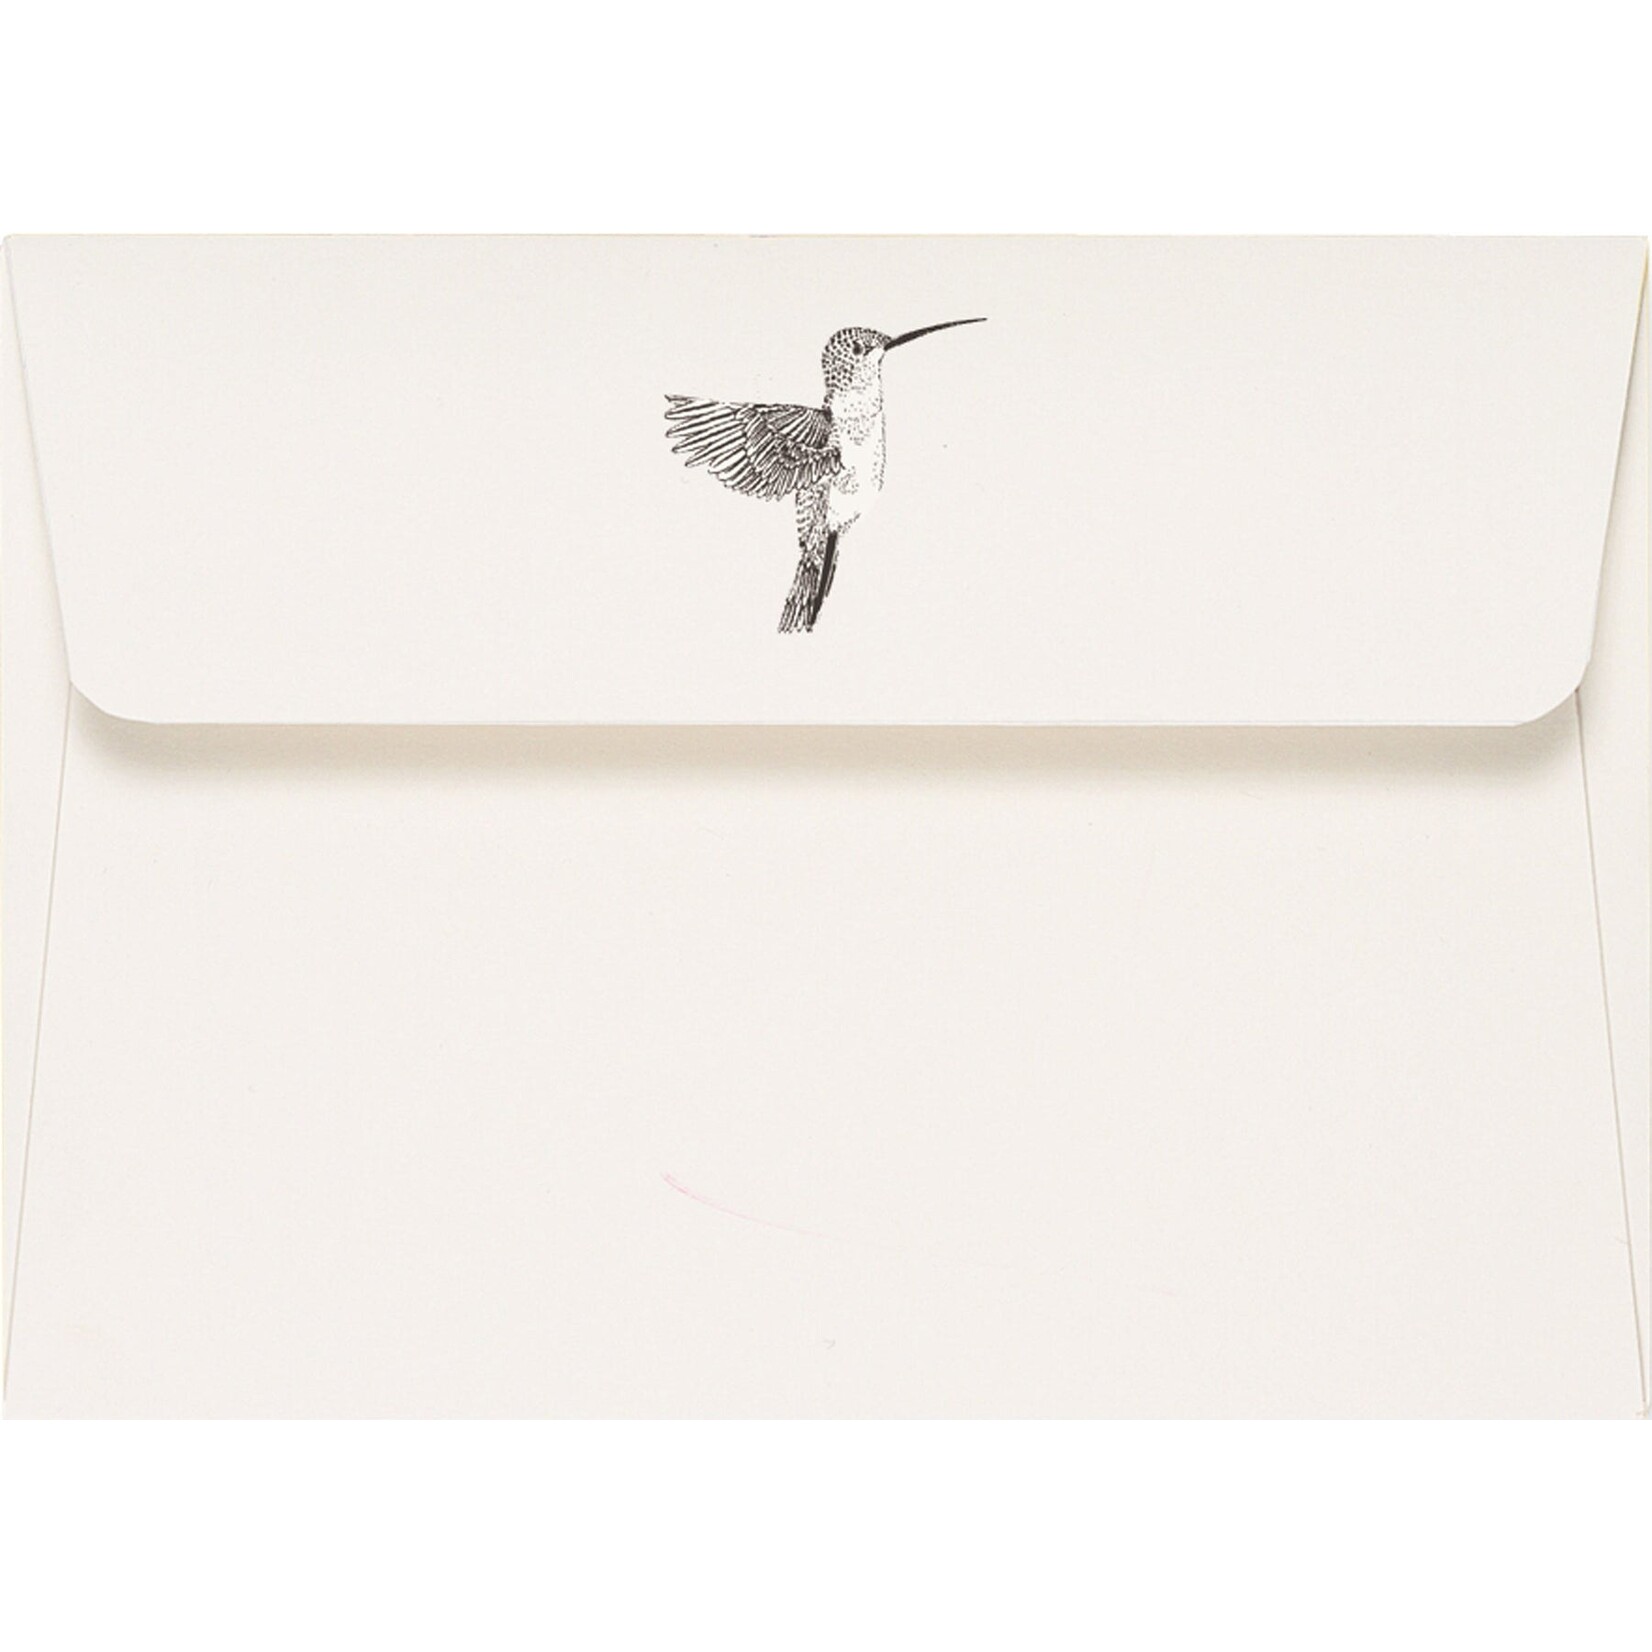 Peter Pauper Press Boxed Notecard - Hummingbird